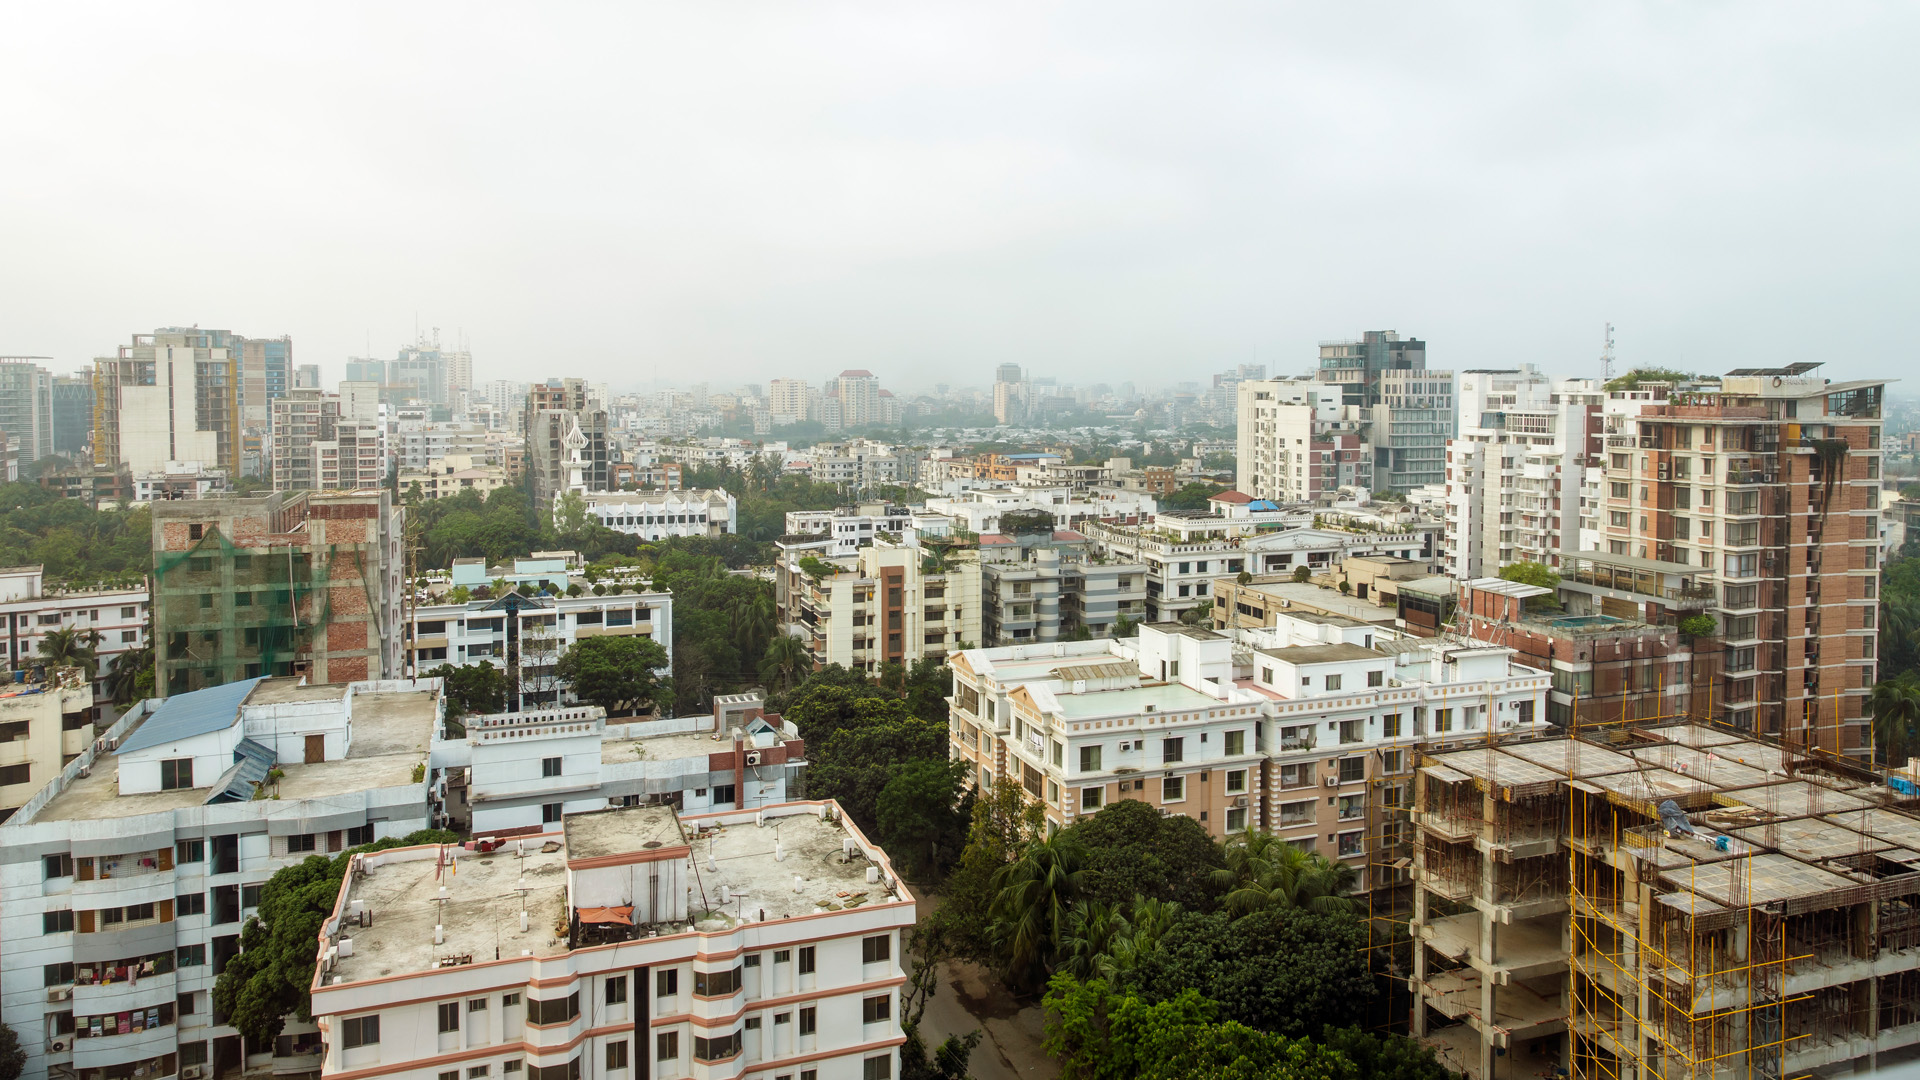 View of Dhaka, the capital of Bangladesh